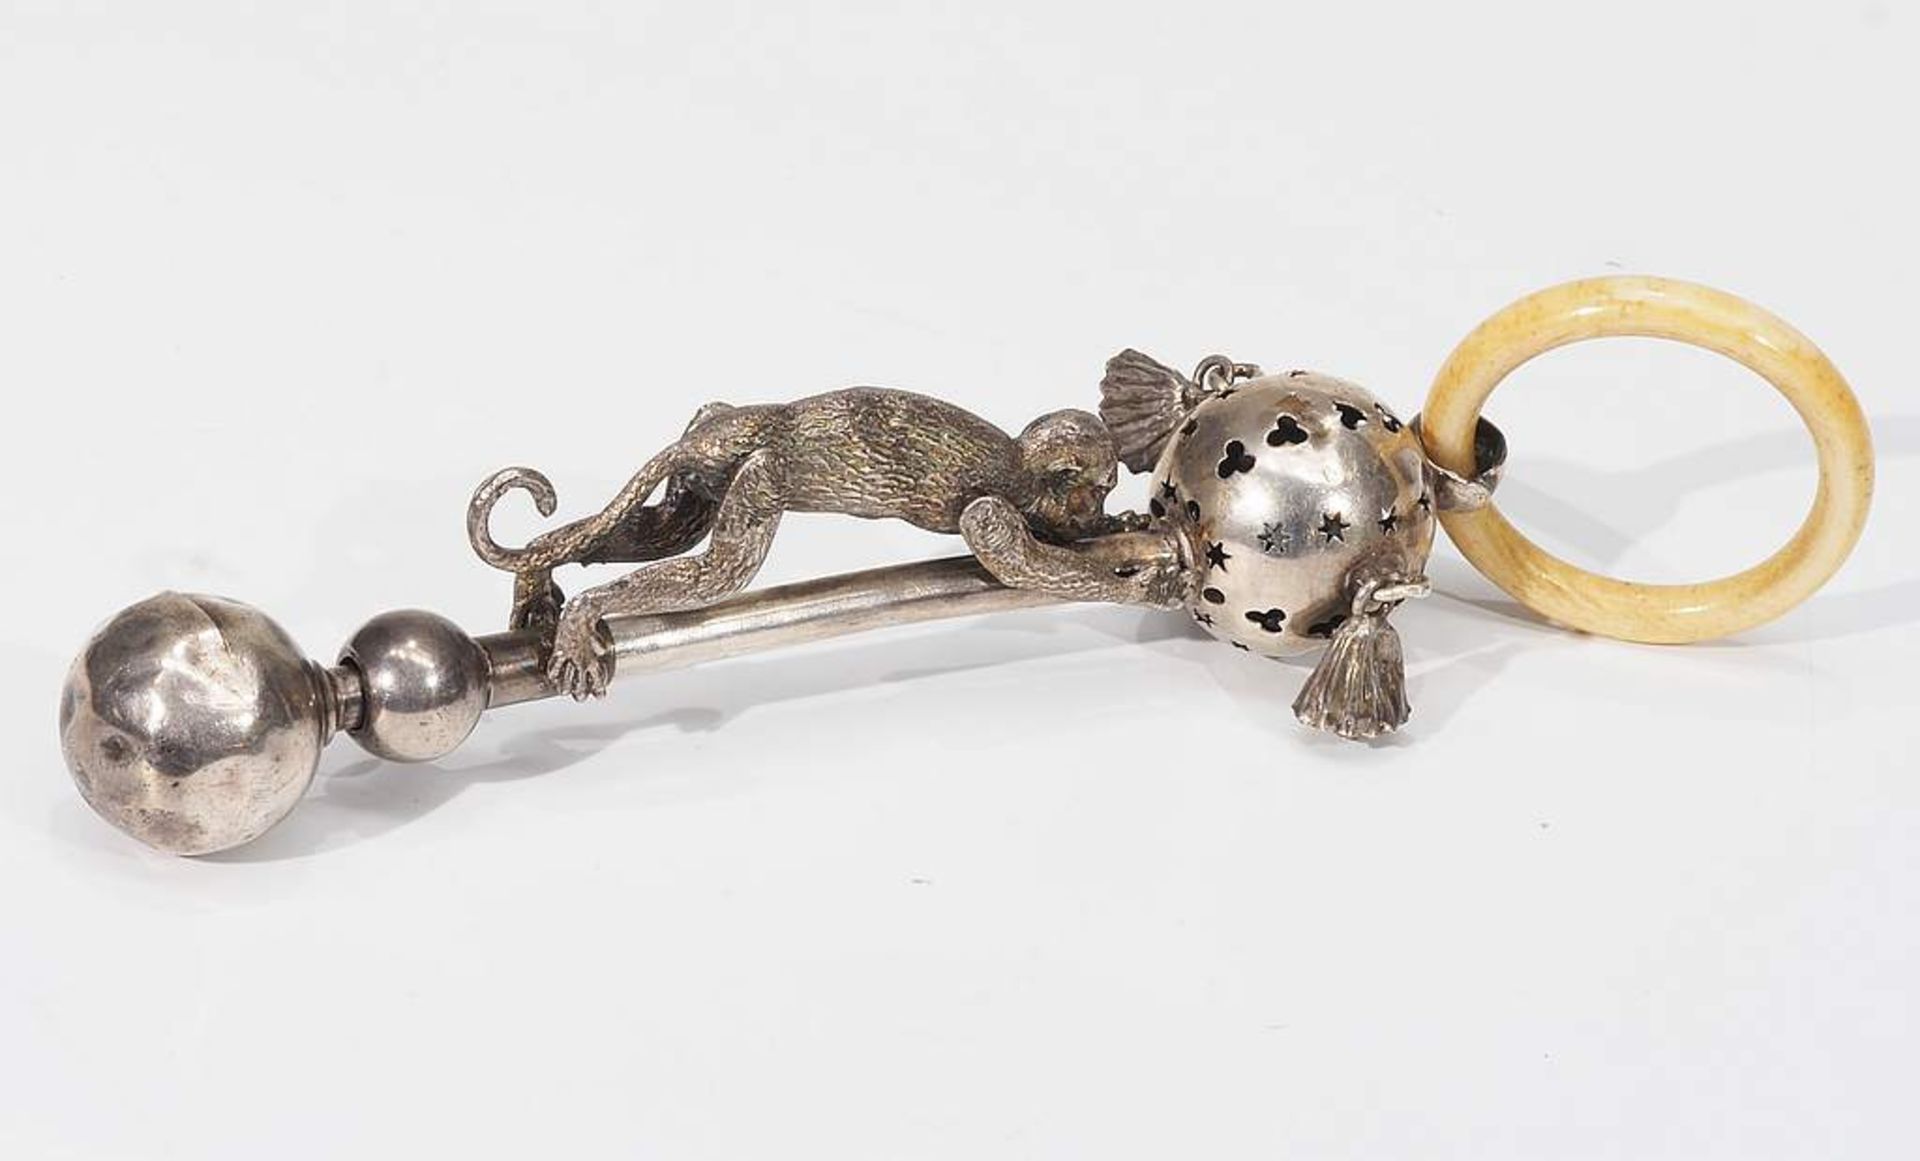 Kinderrassel mit Affe. Silber geprüft. Dargestellt ein beweglicher Affe, durchbrochen gearbeitete - Bild 3 aus 5